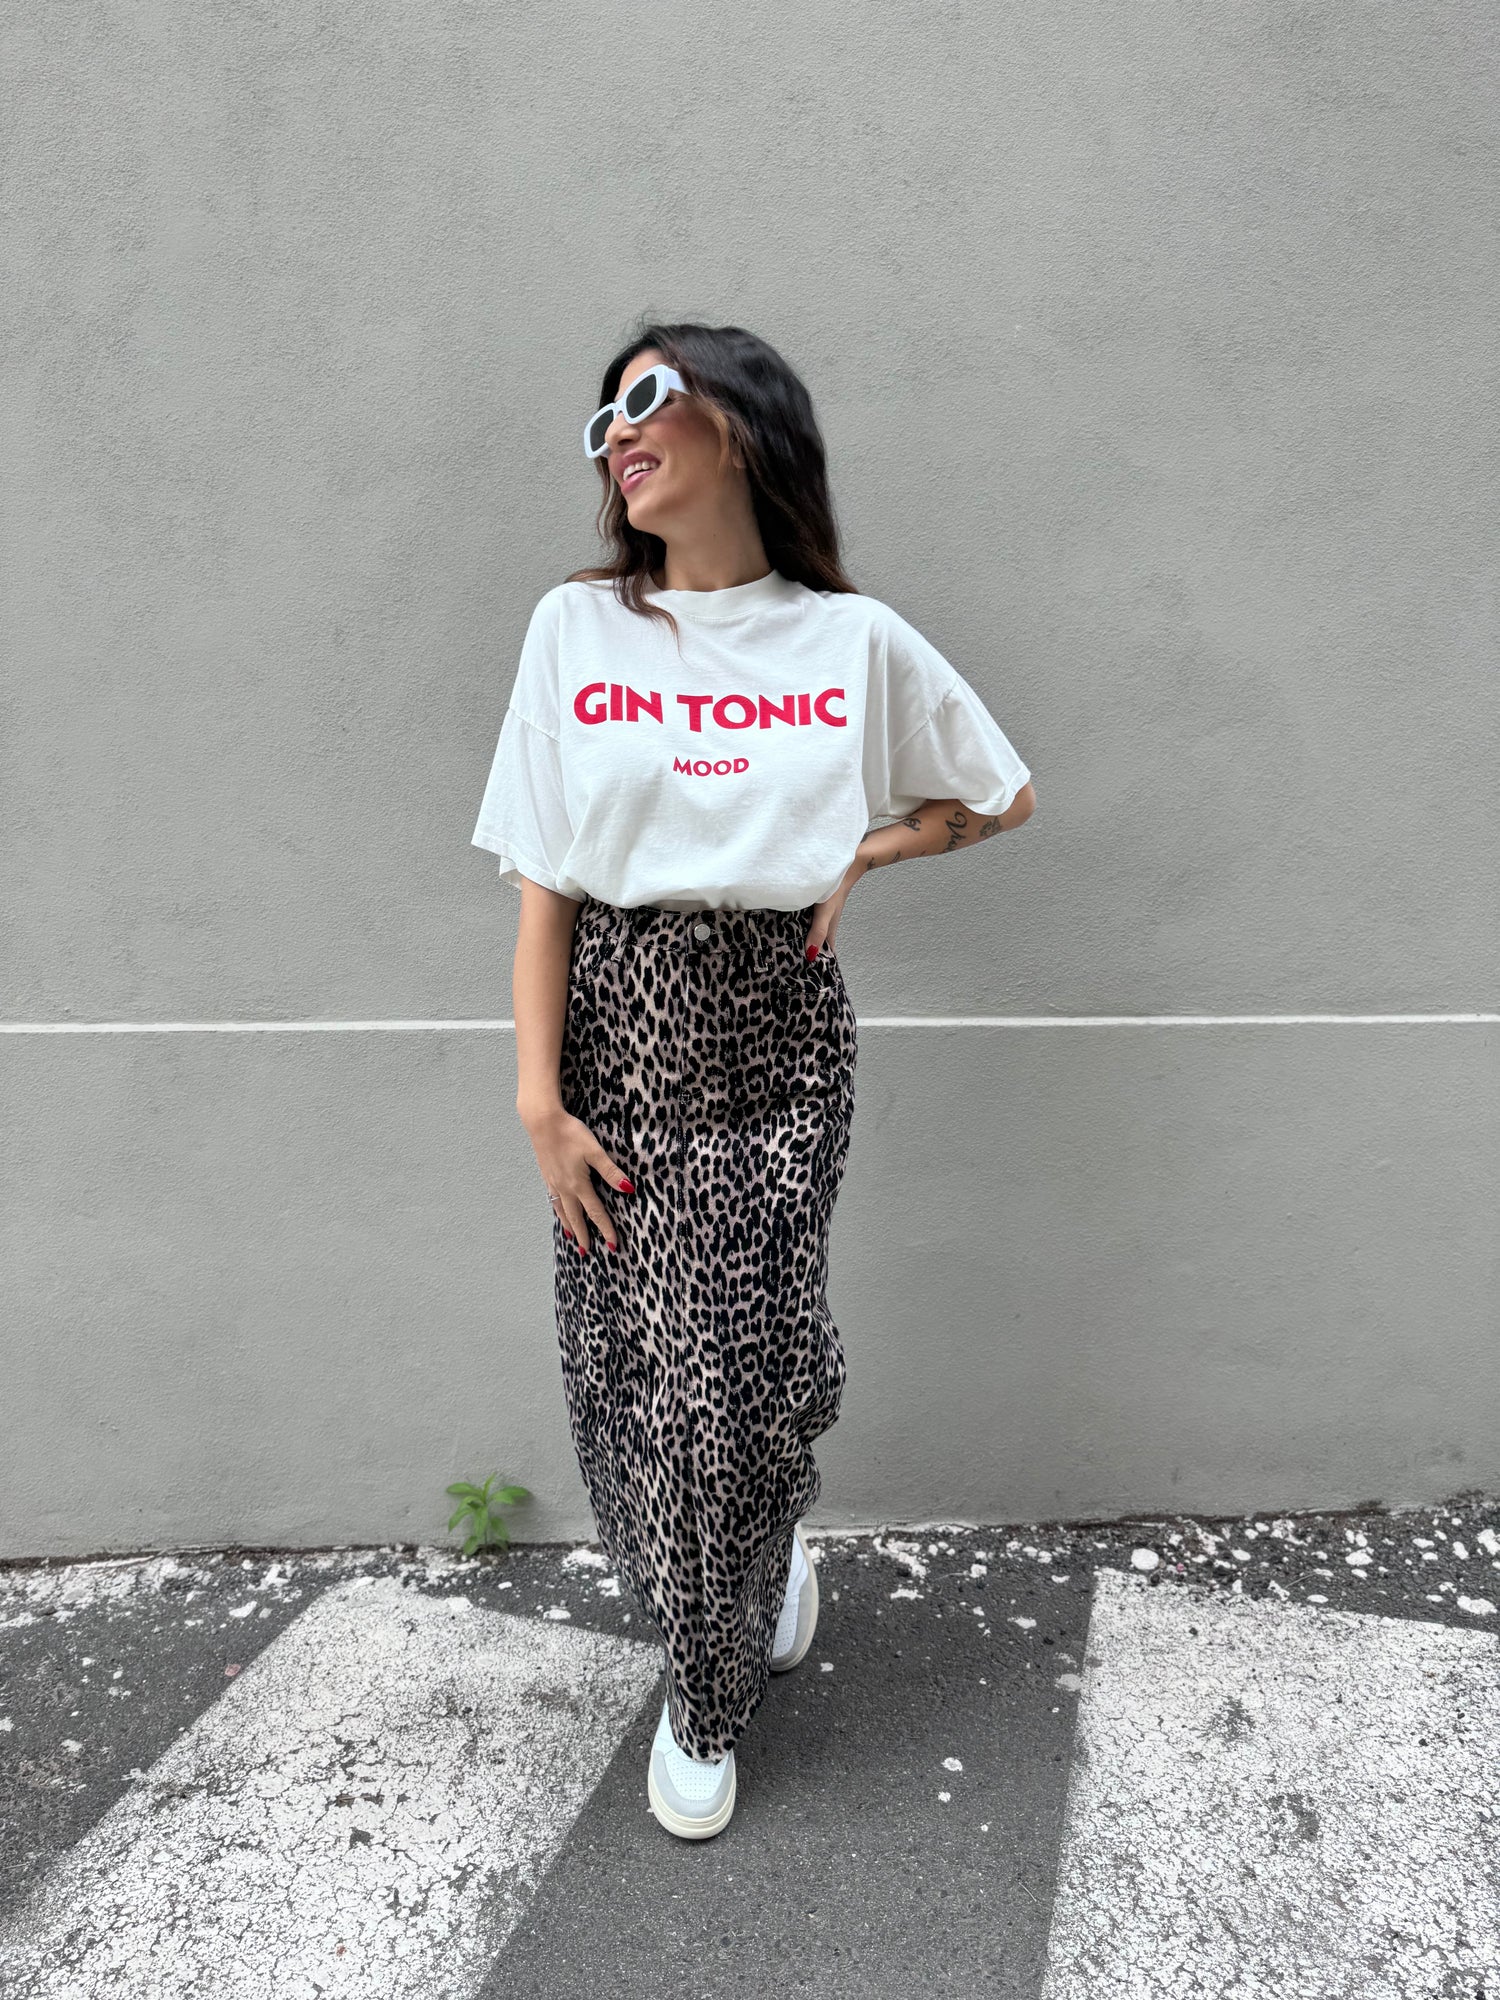 T-Shirt “Gin tonic mood” VICOLO